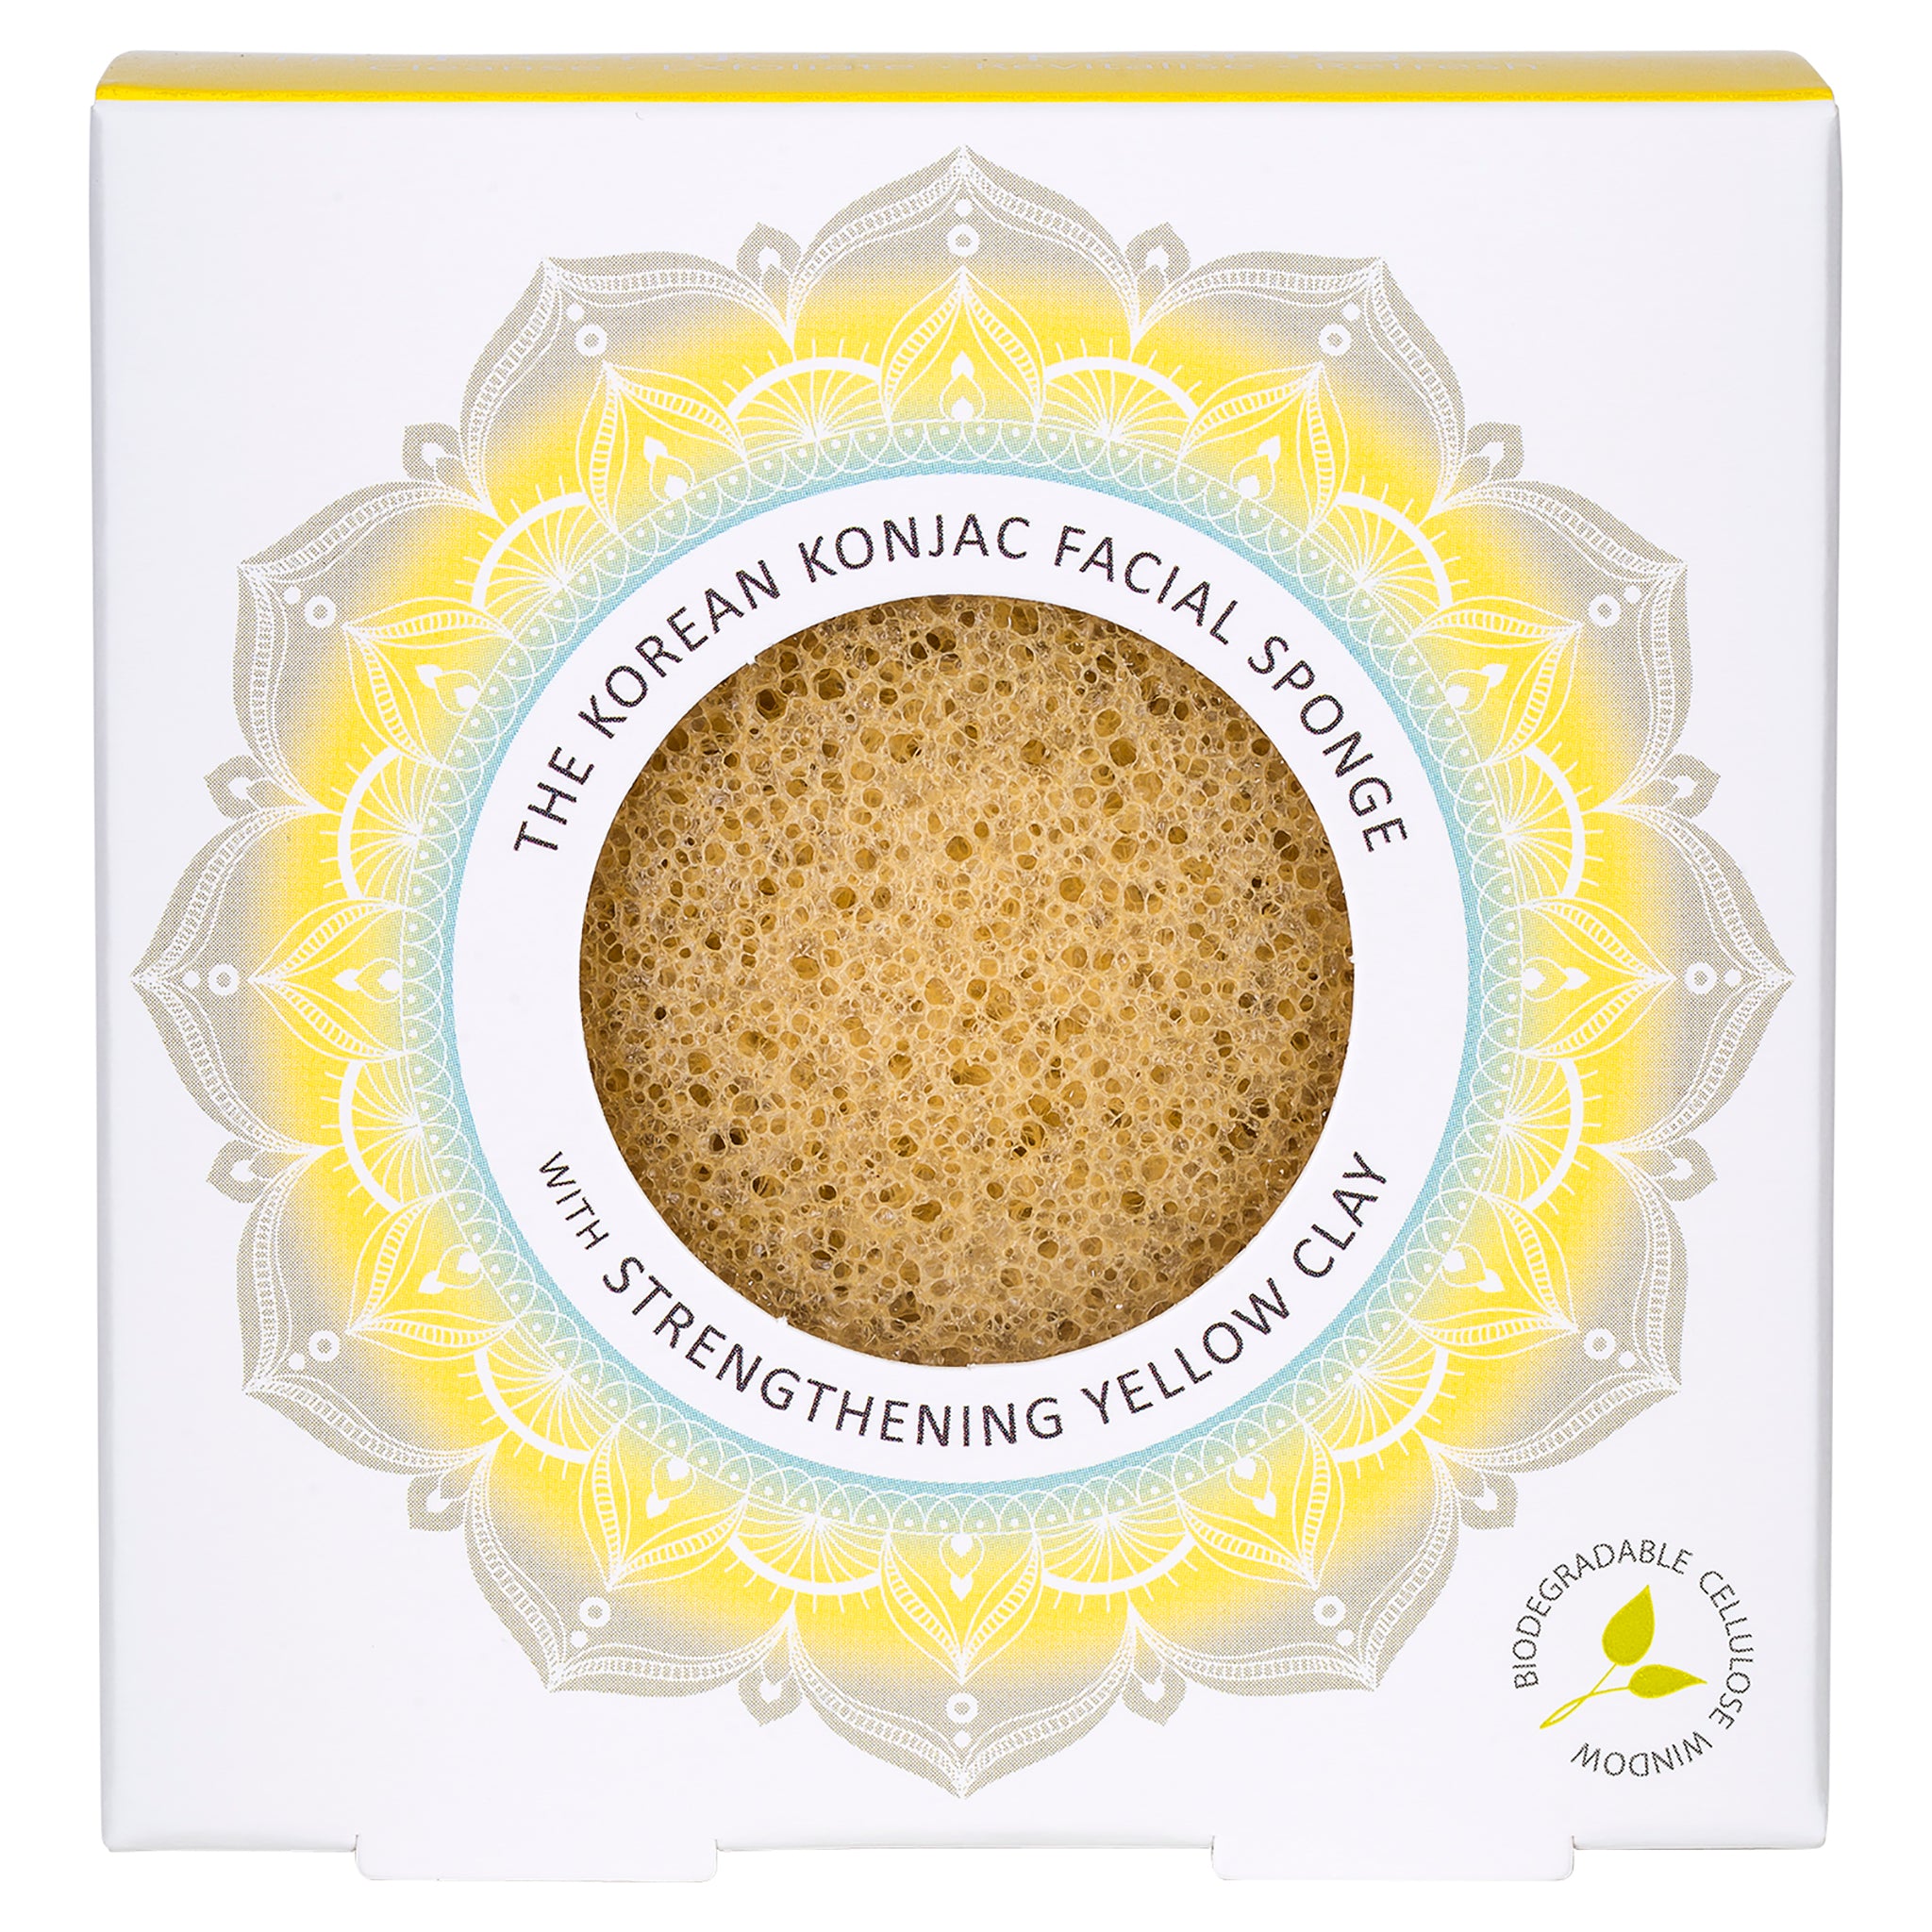 The Mandala Yellow Clay Face Sponge